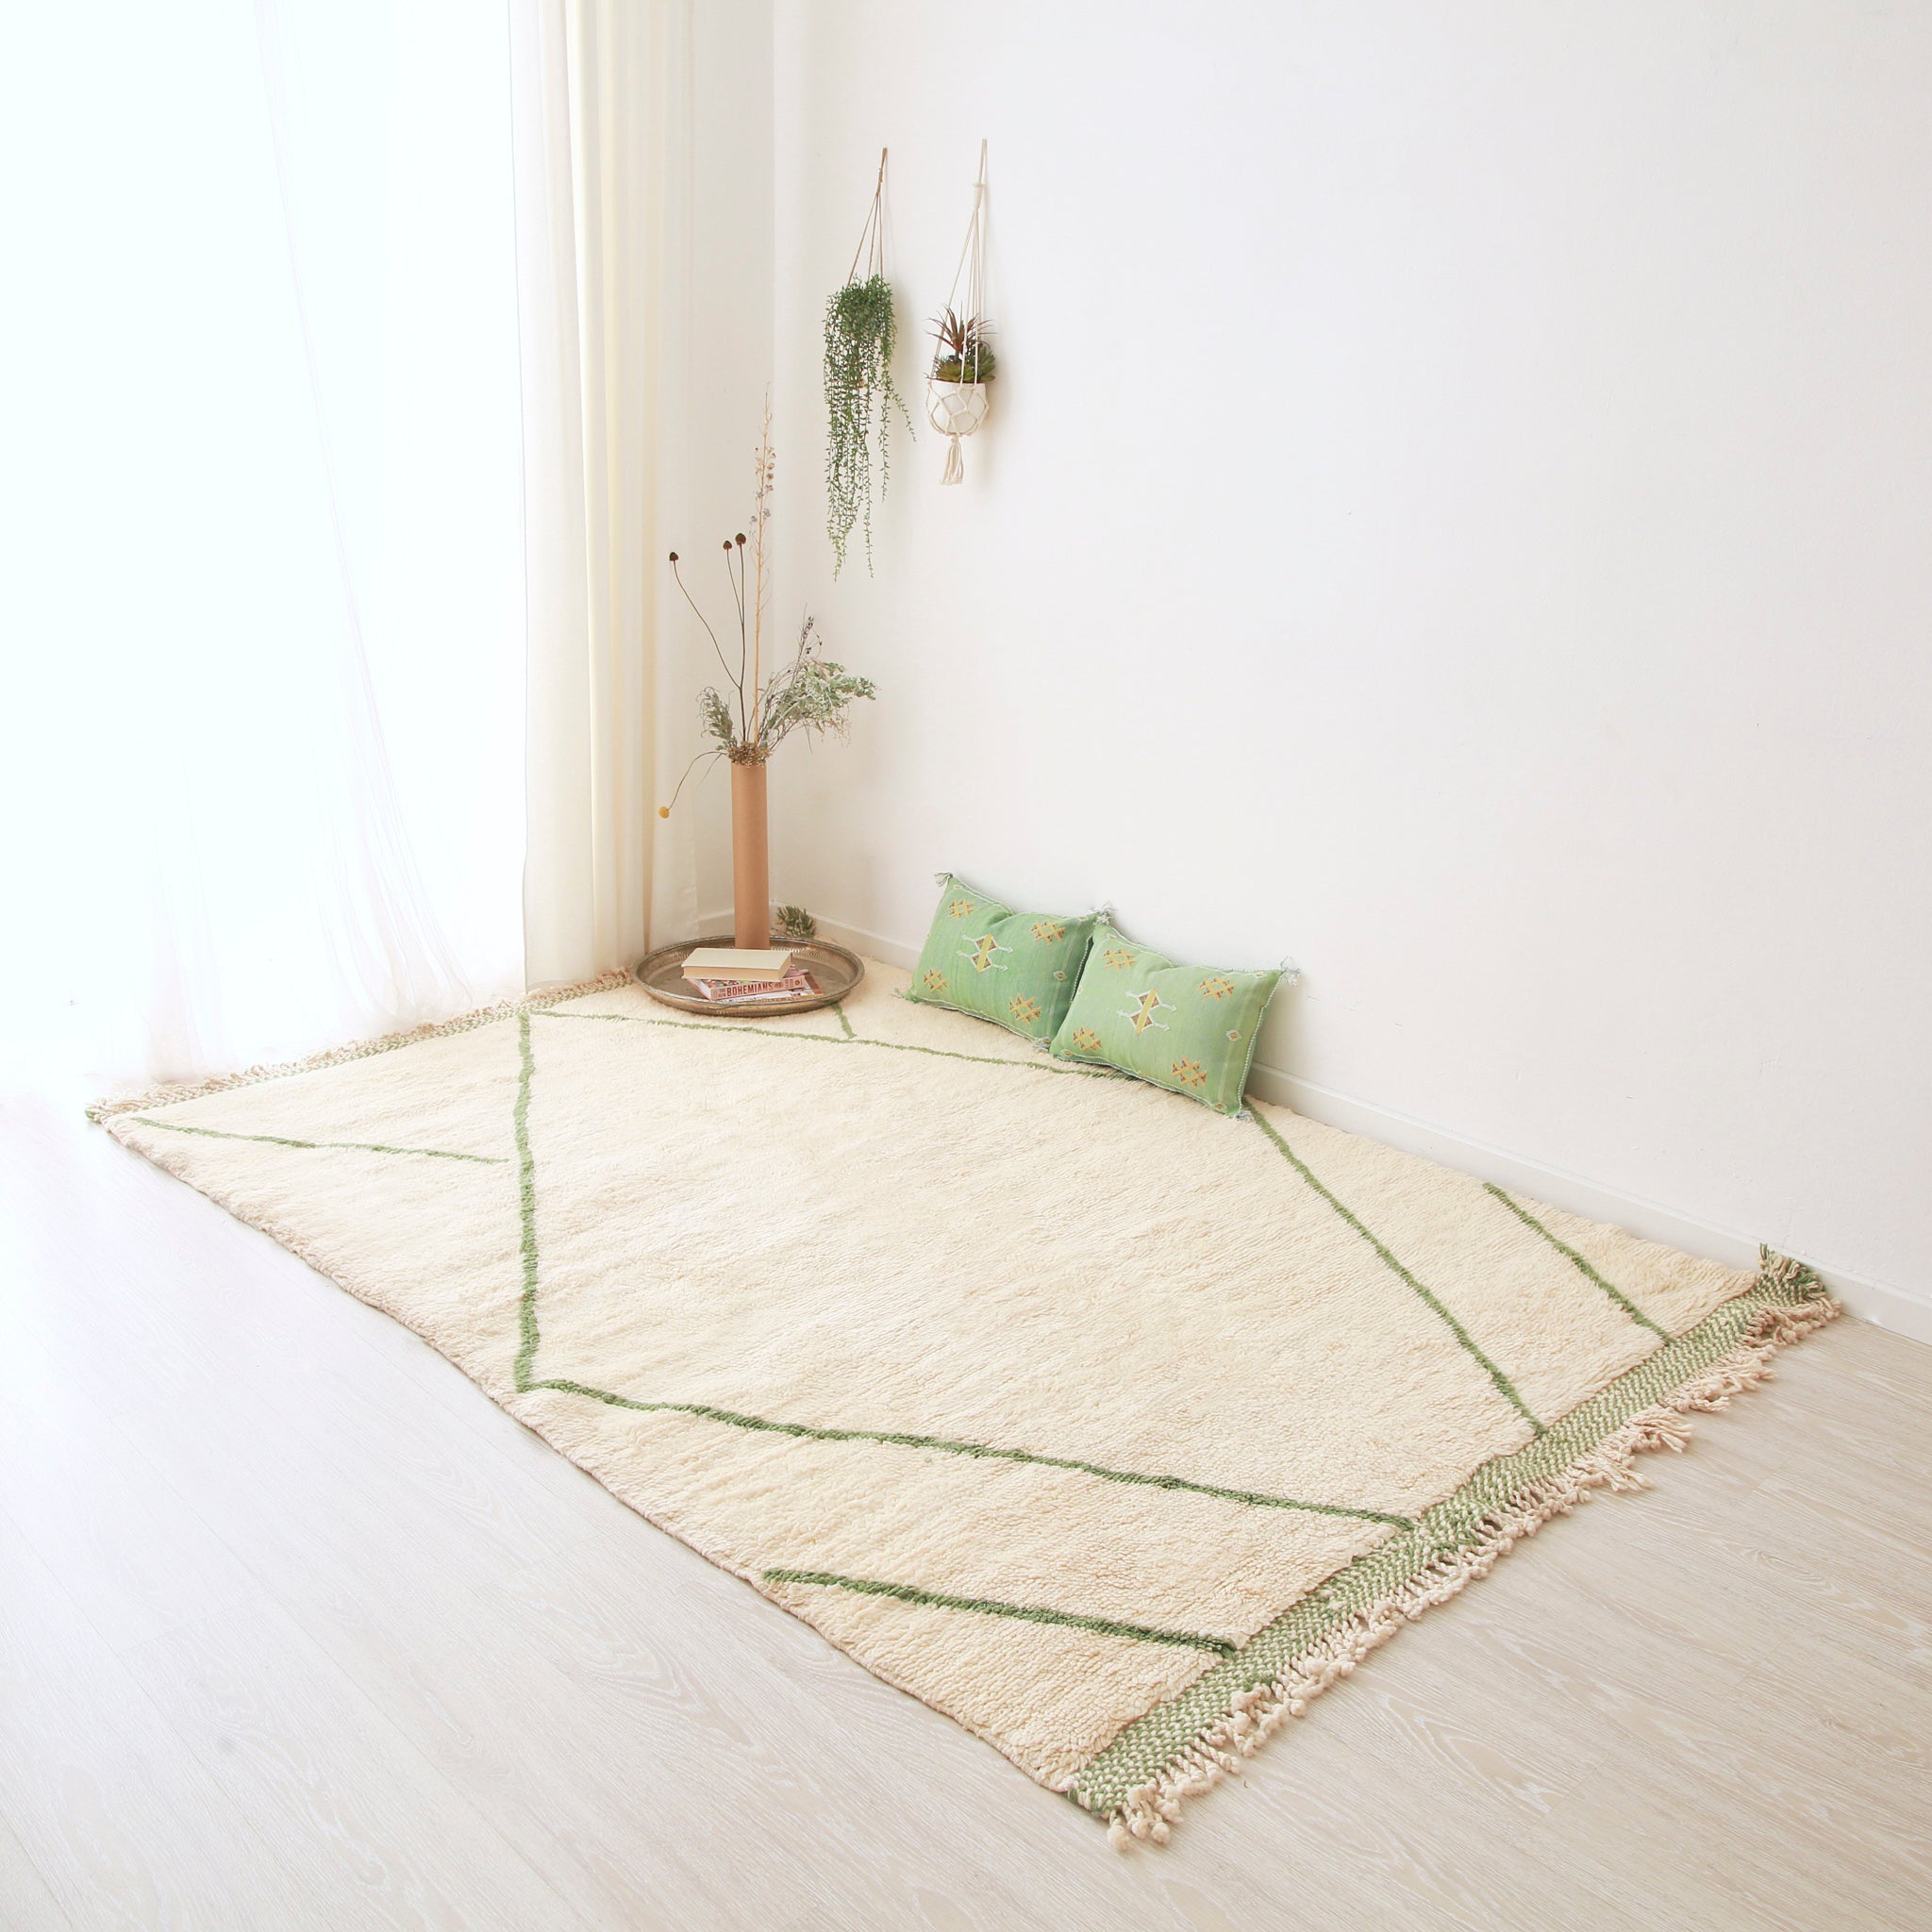 tappeto beni mrirt bianco con righe verdi appoggito sul pavimento. Sul tappeto ci sono due cuscini verdi in sabra, un piatto in argento e una composizione floreale. Sulla parete sono appese due painte